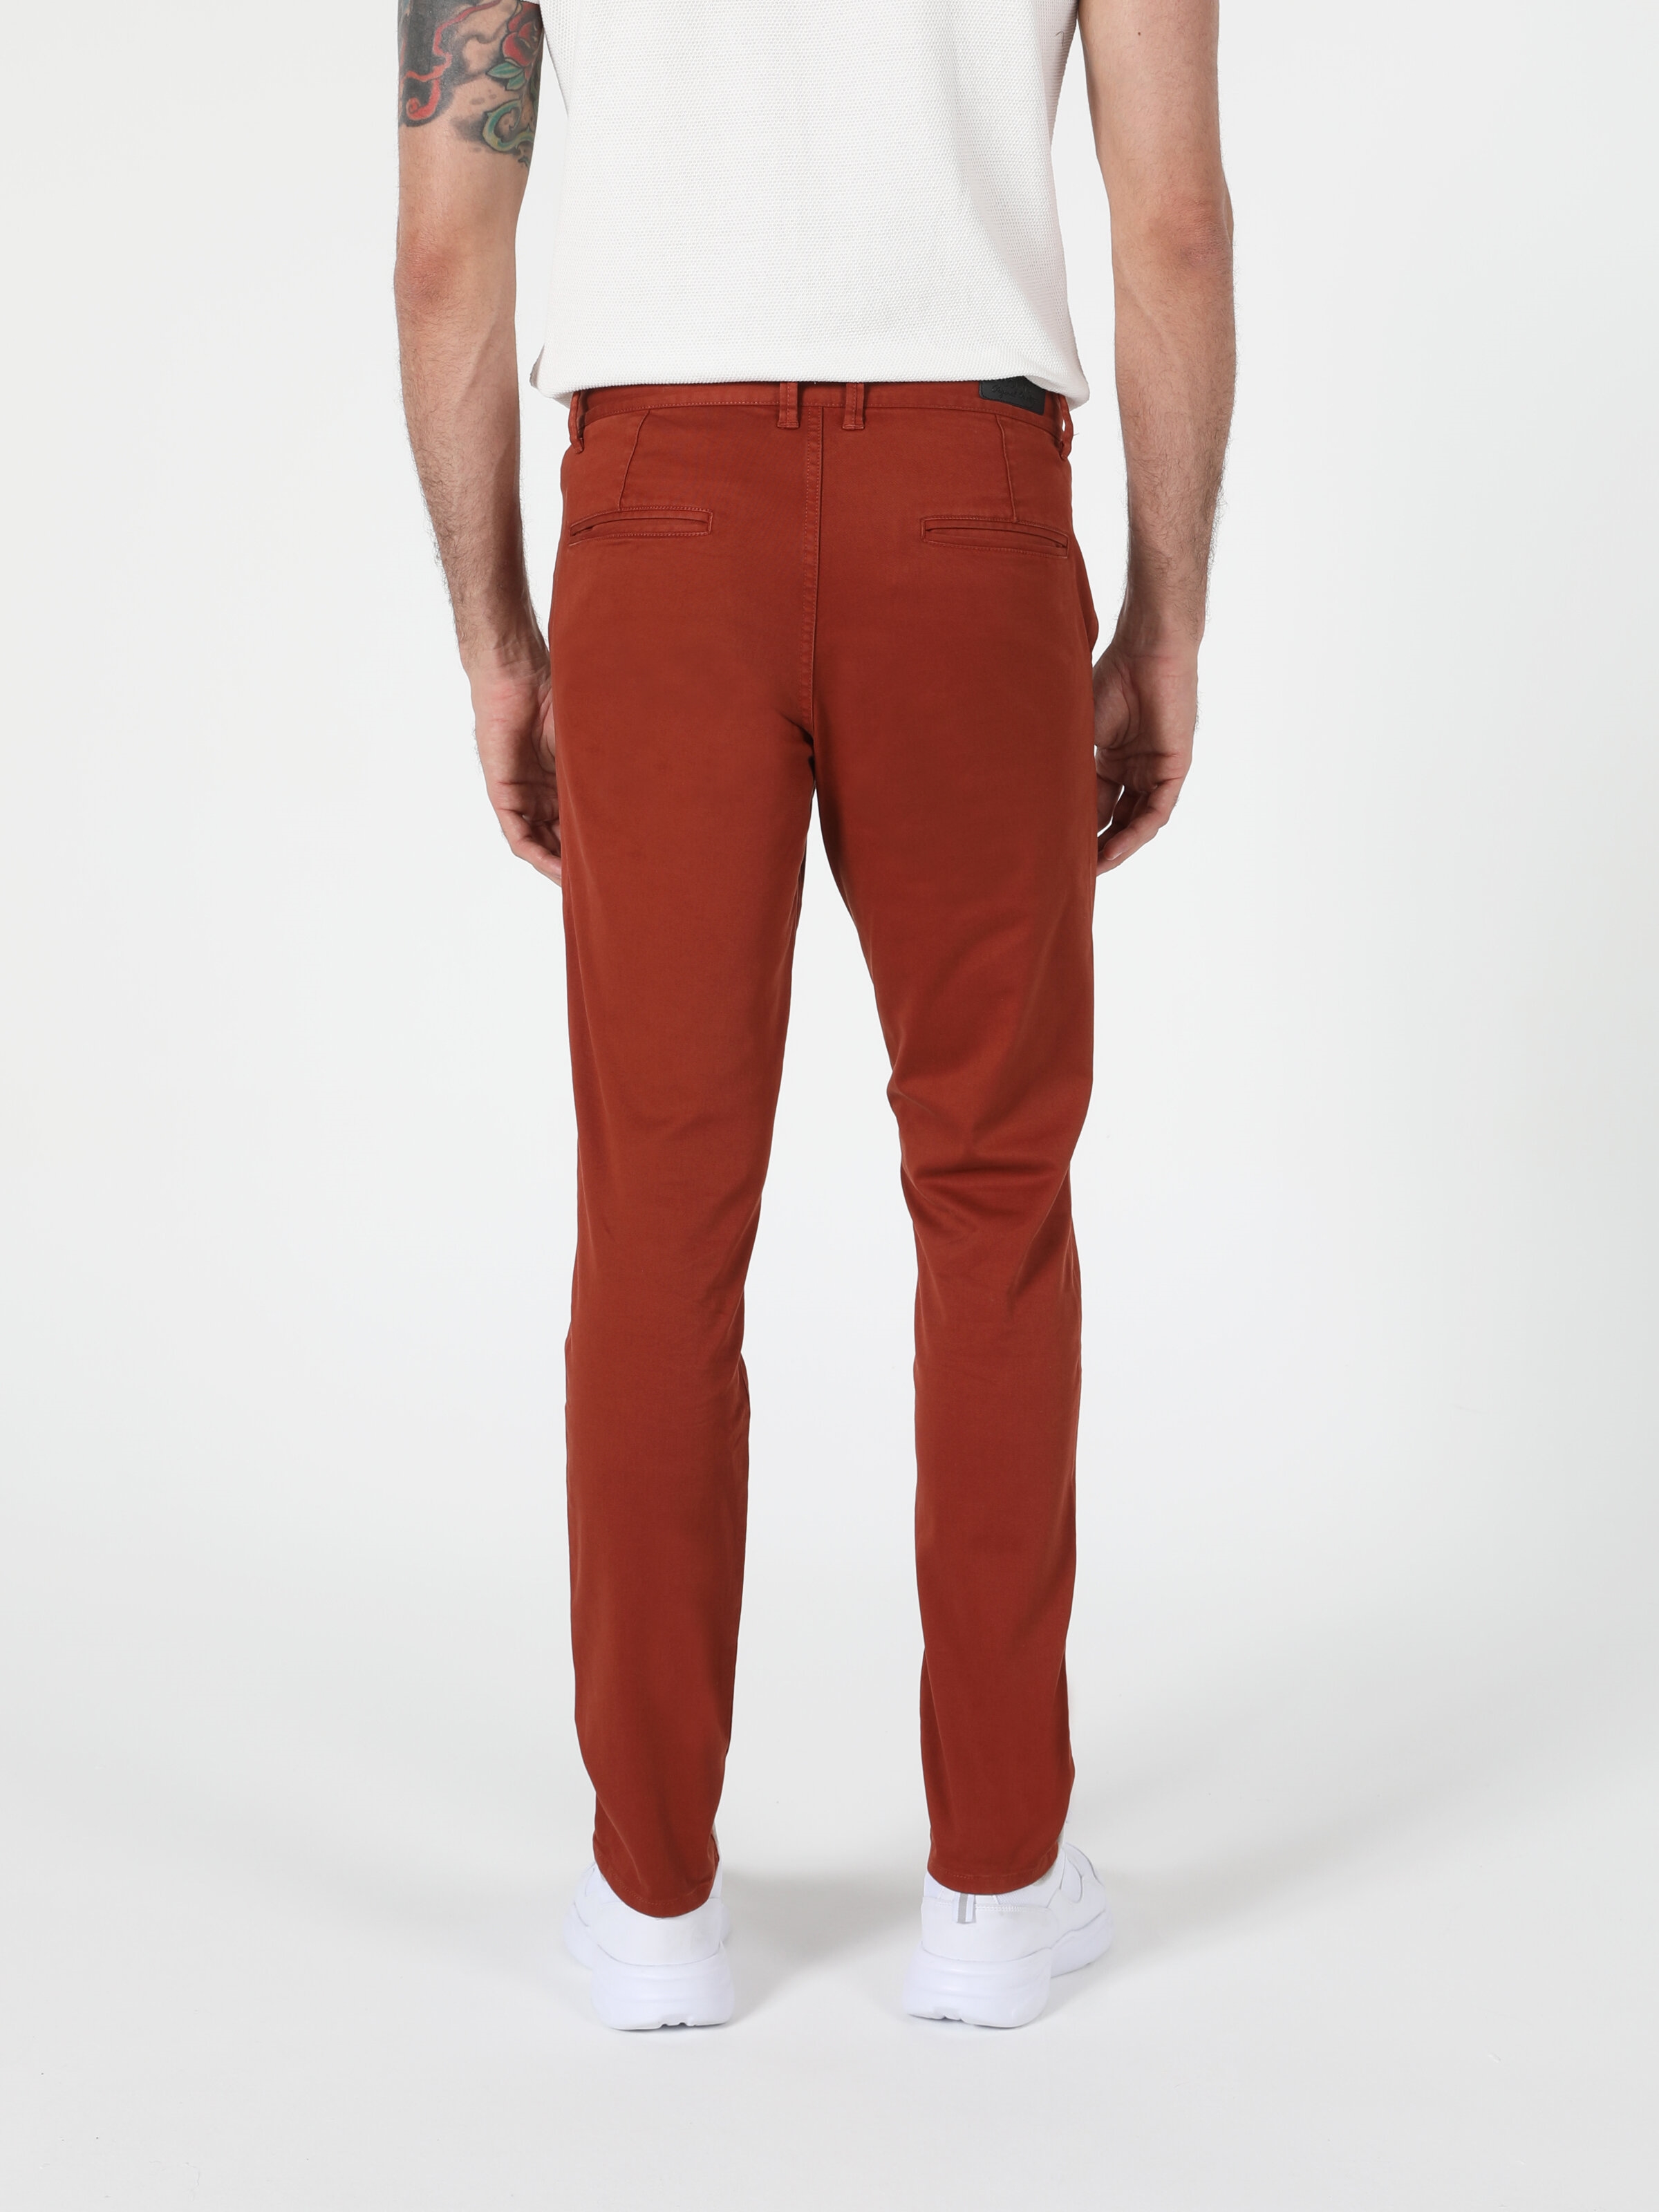 Afficher les détails de Pantalon Orange Hommes